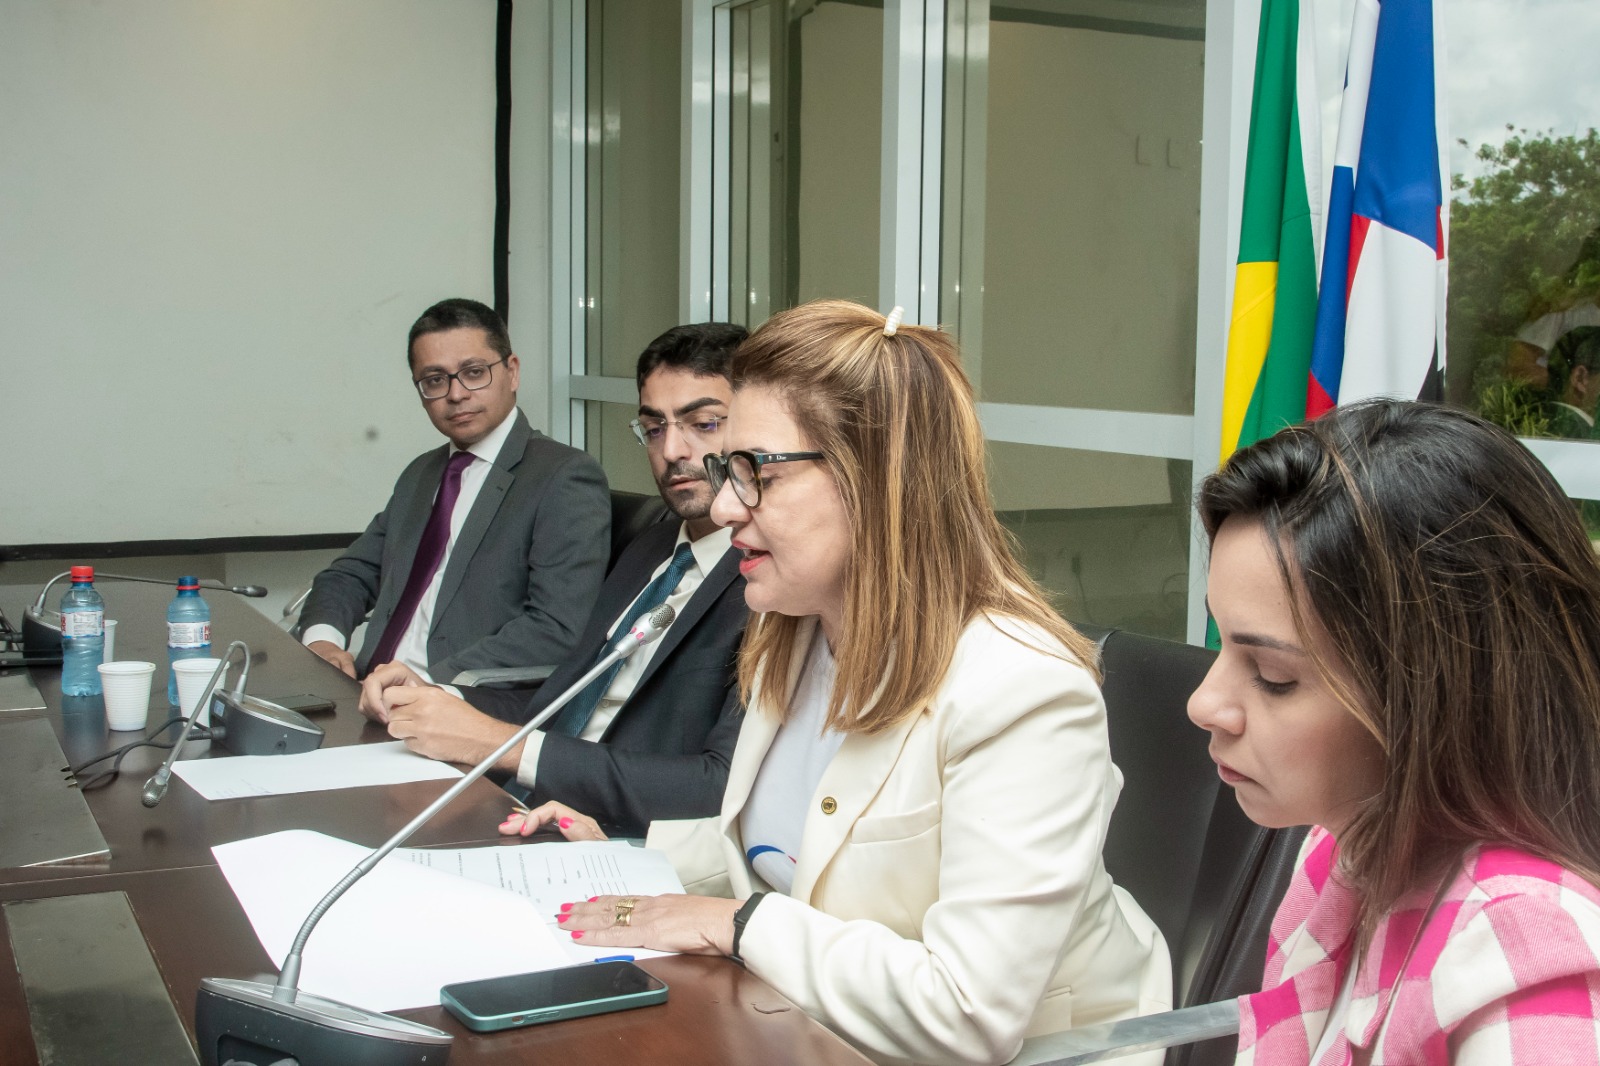 Presidente da Comissão de Saúde, deputado Florêncio Neto, e a vice-presidente, deputada Cláudia Coutinho, coordenaram a reunião